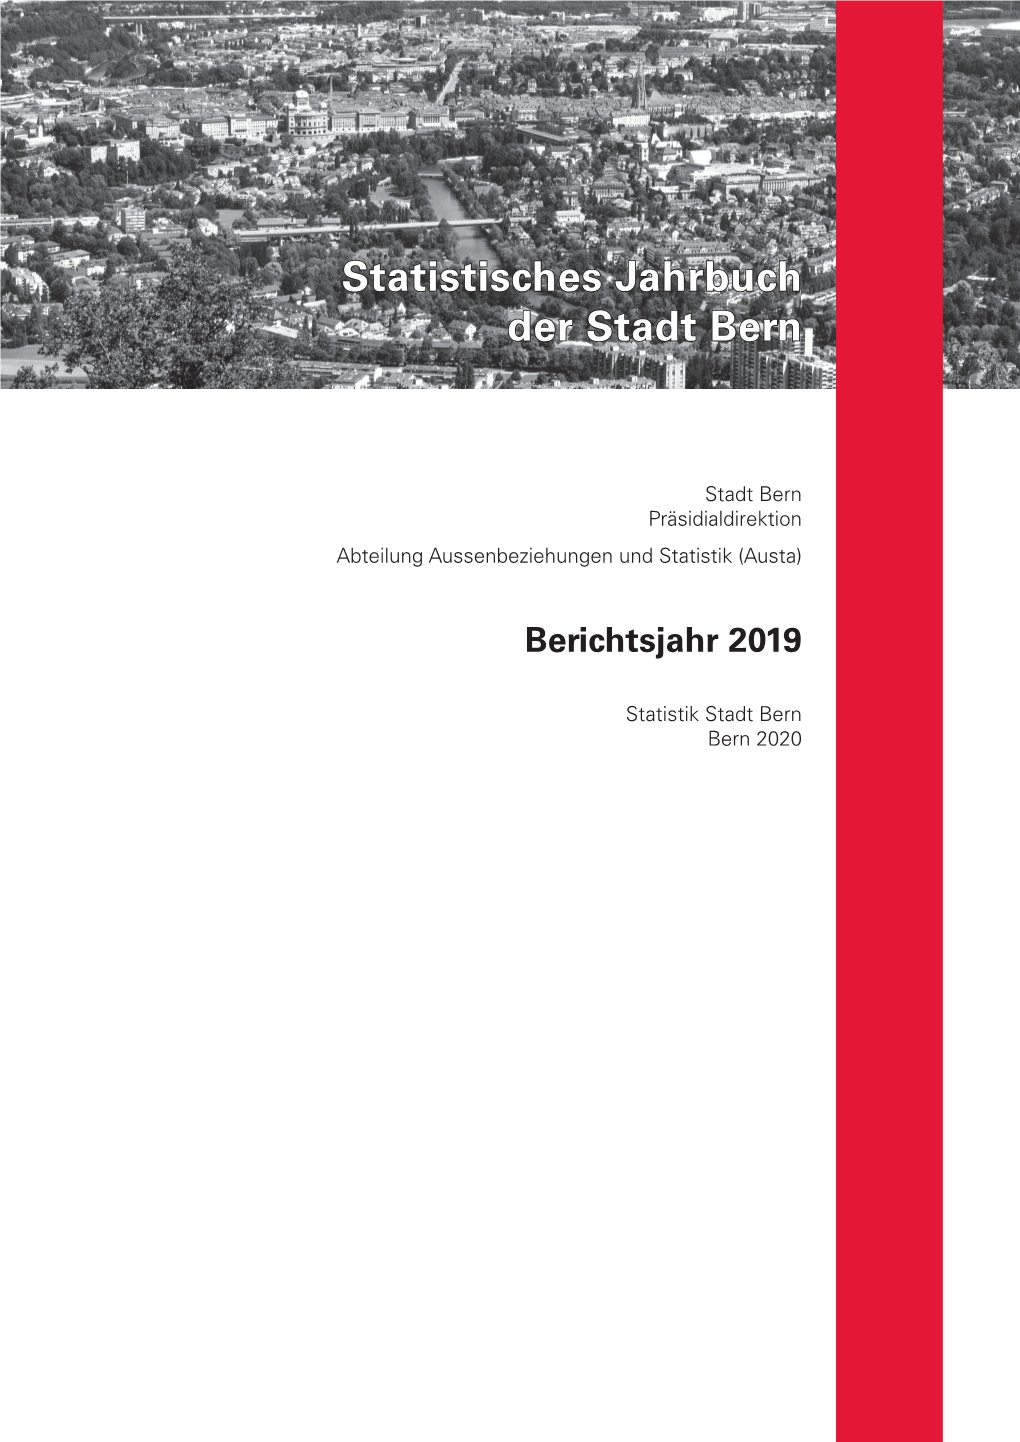 Jahrbuch 2019 (Ausgabejahr 2020)